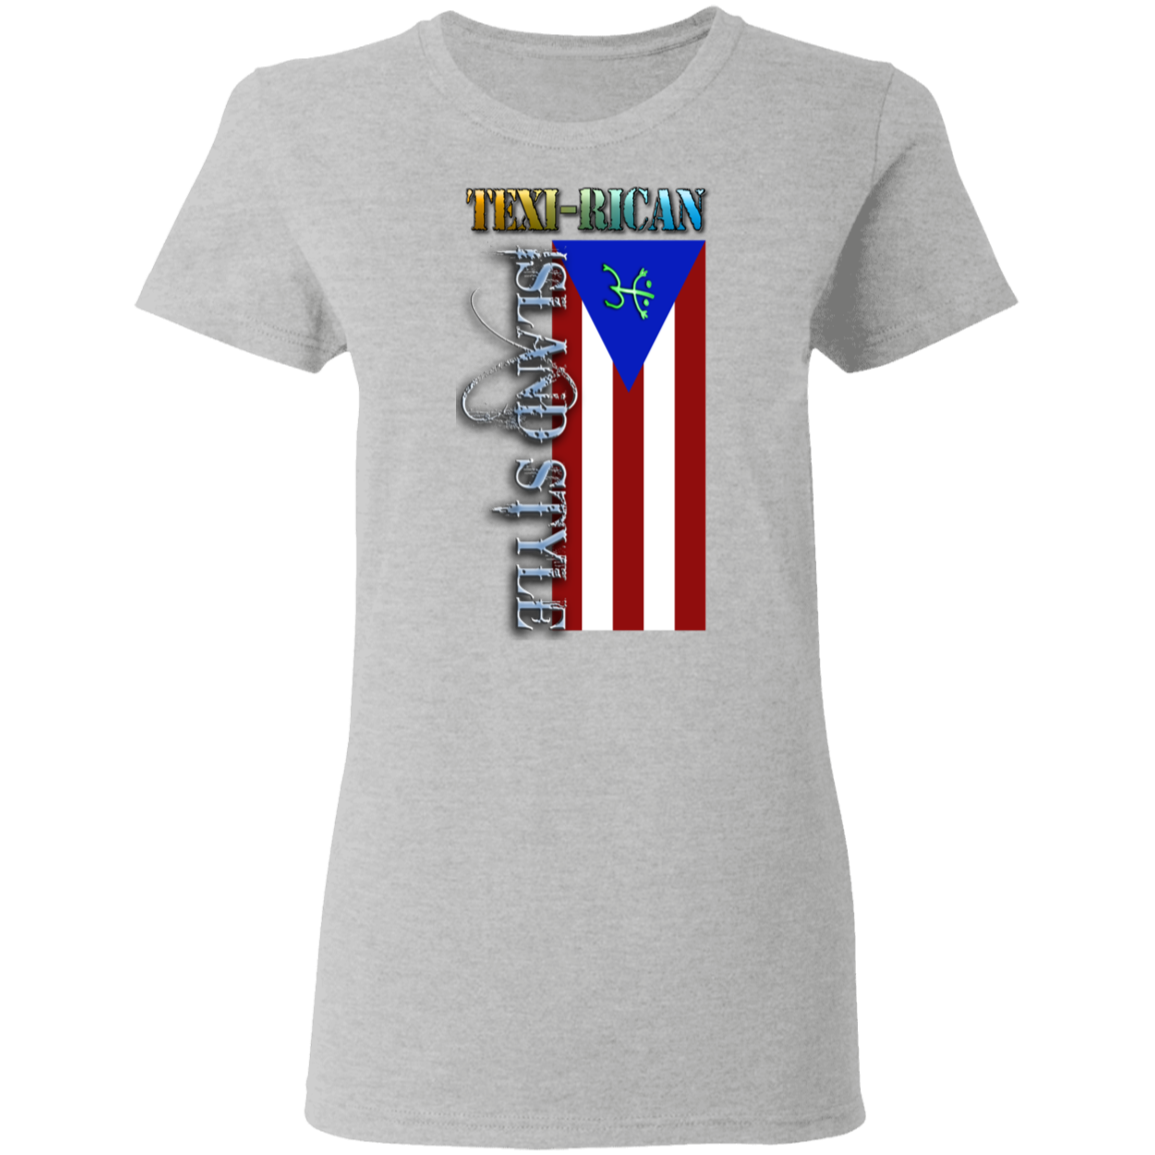 Texi-Rican Ladies' 5.3 oz. T-Shirt